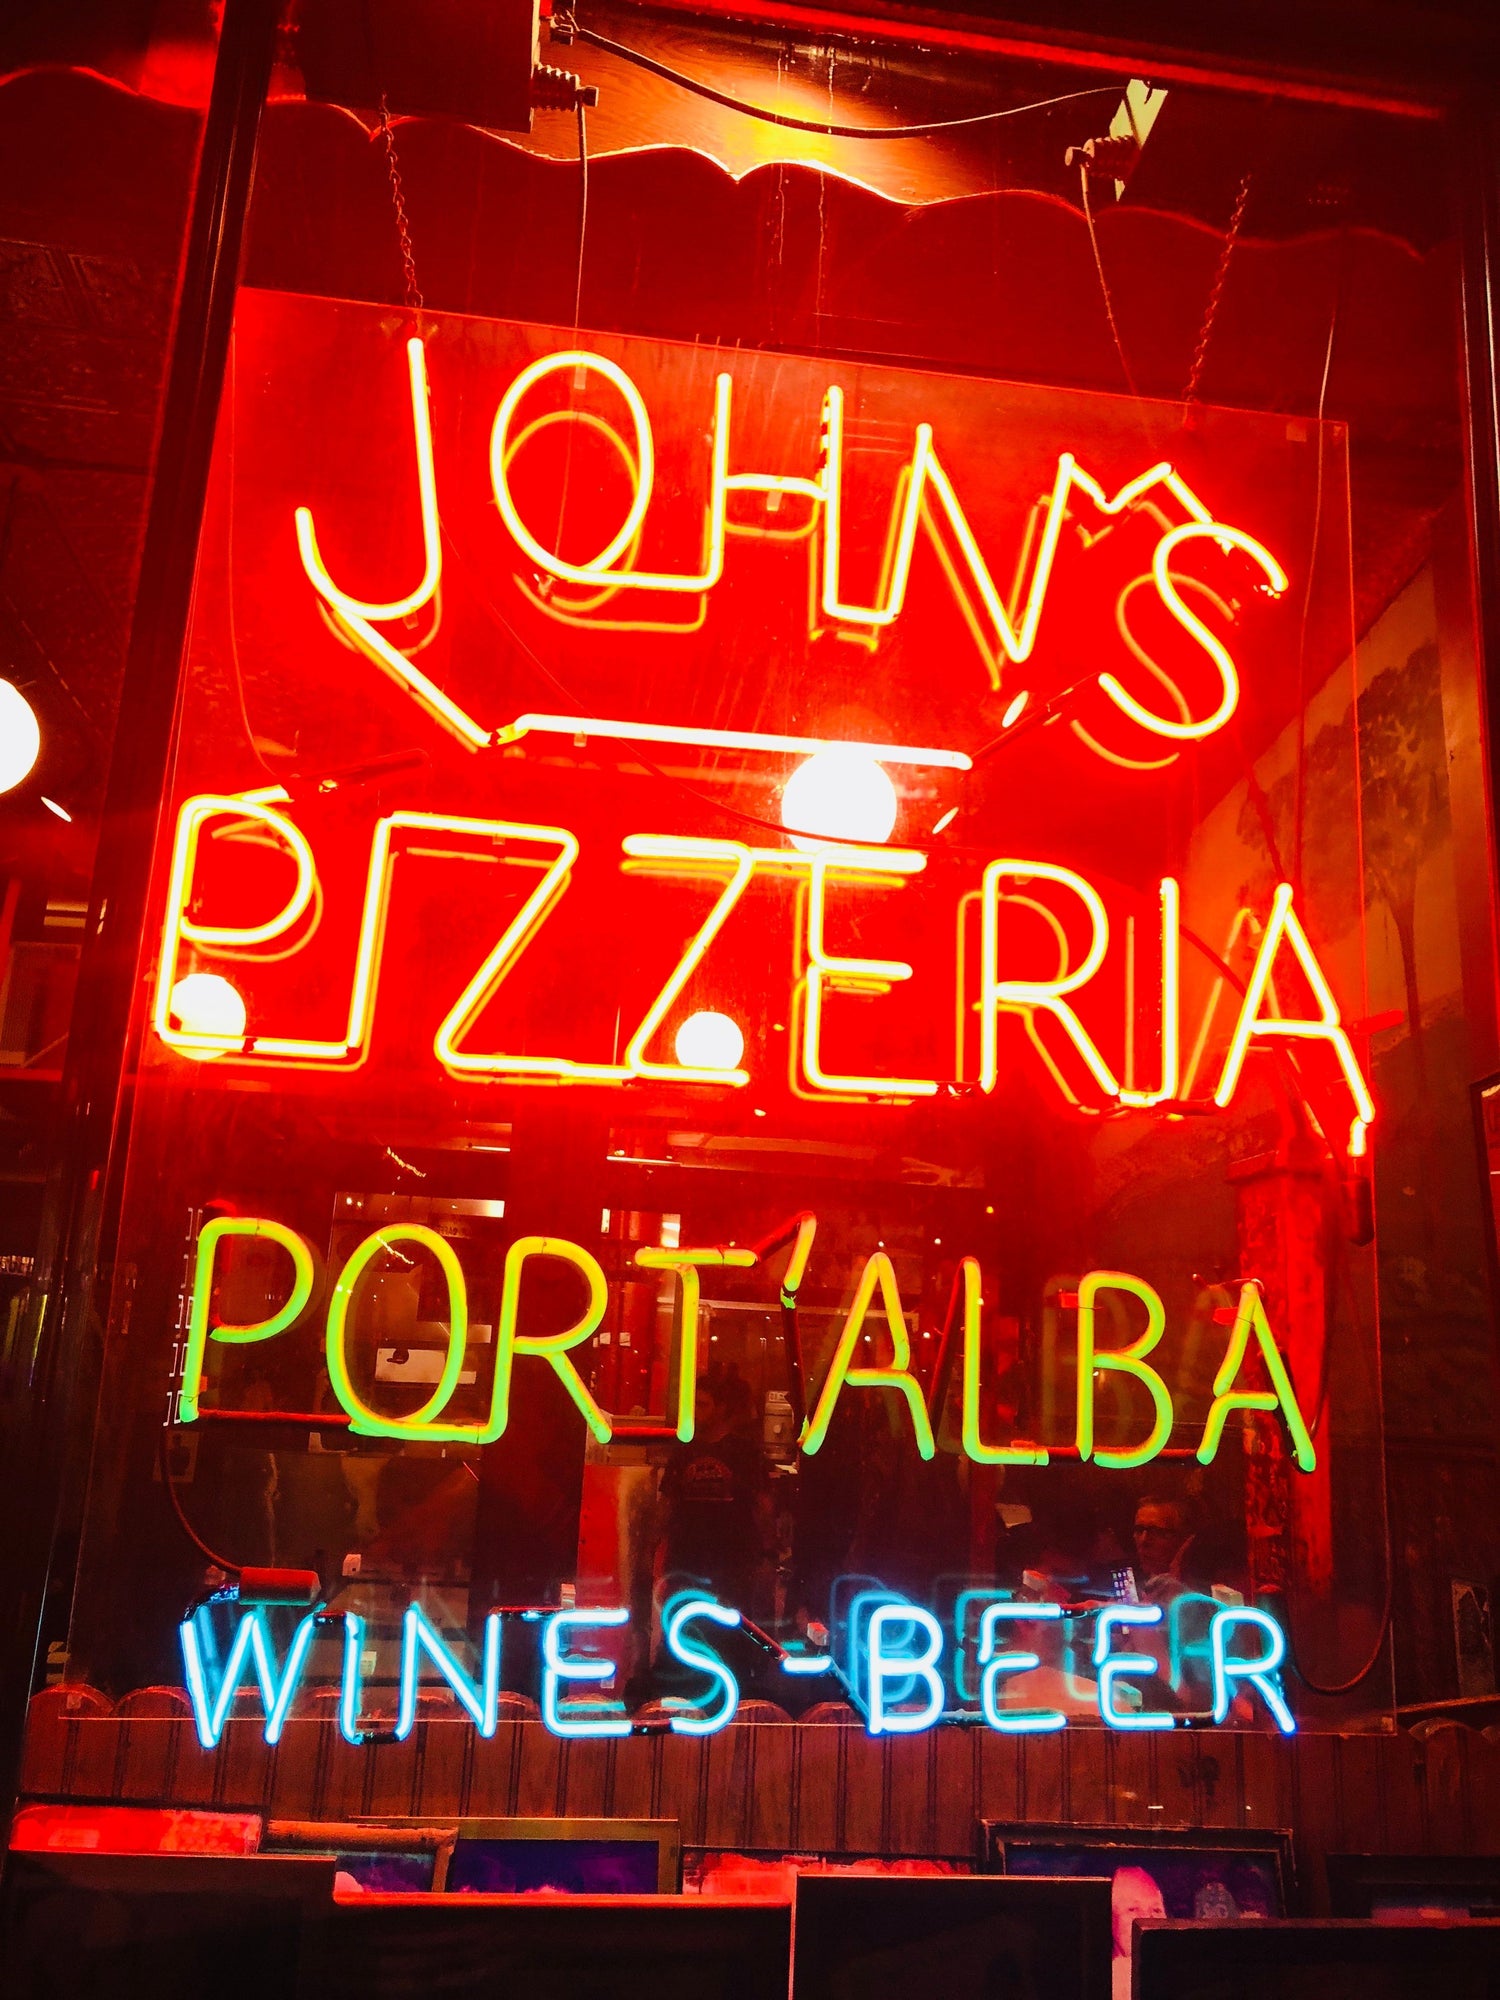 John's Pizzeria sign outside of the restaurant